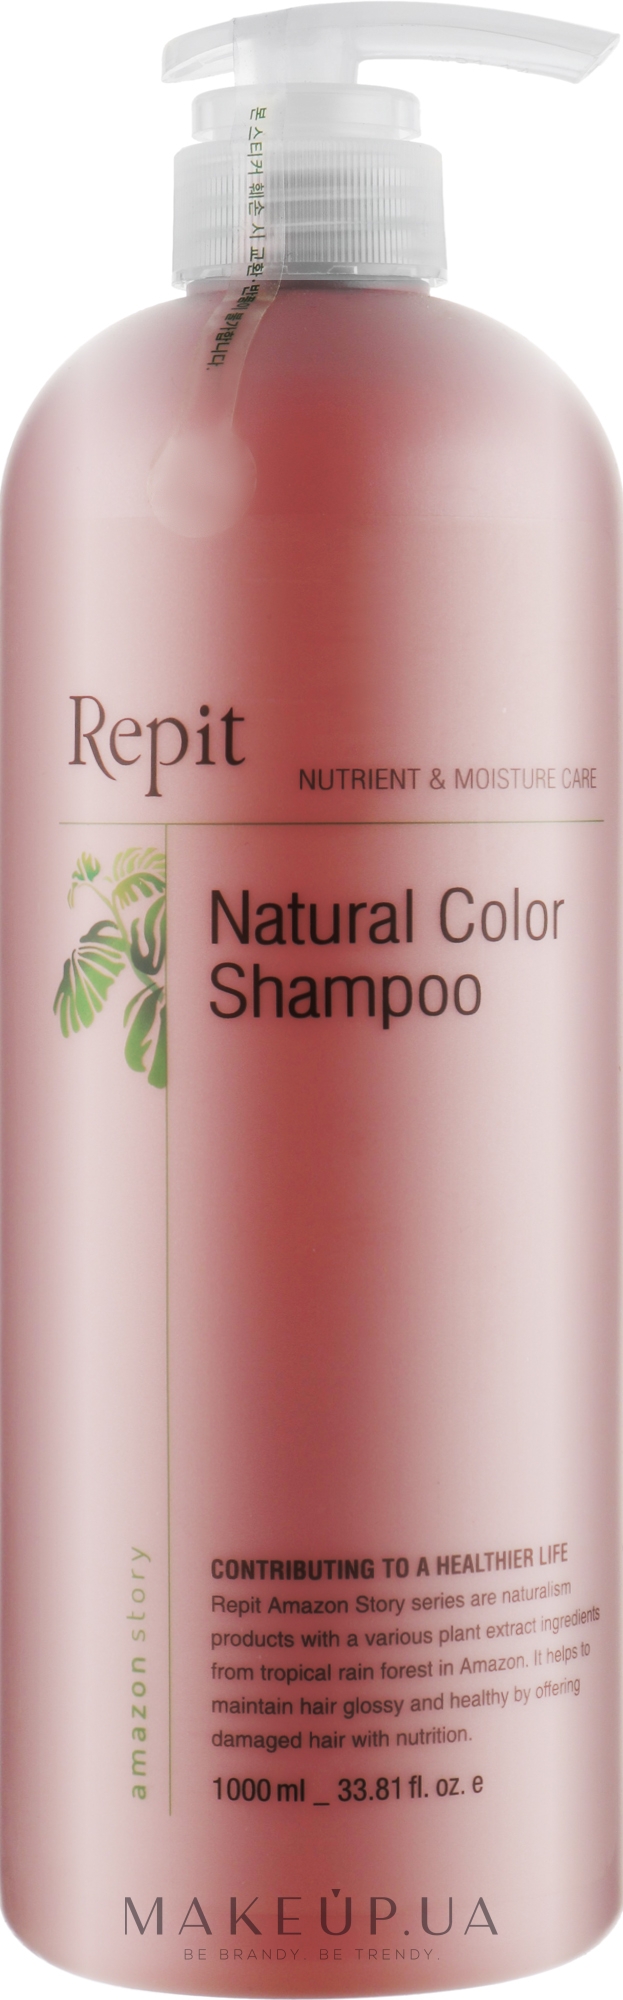 Шампунь для окрашенных волос - Repit Natural Color Shampoo Amazon Story — фото 1000ml